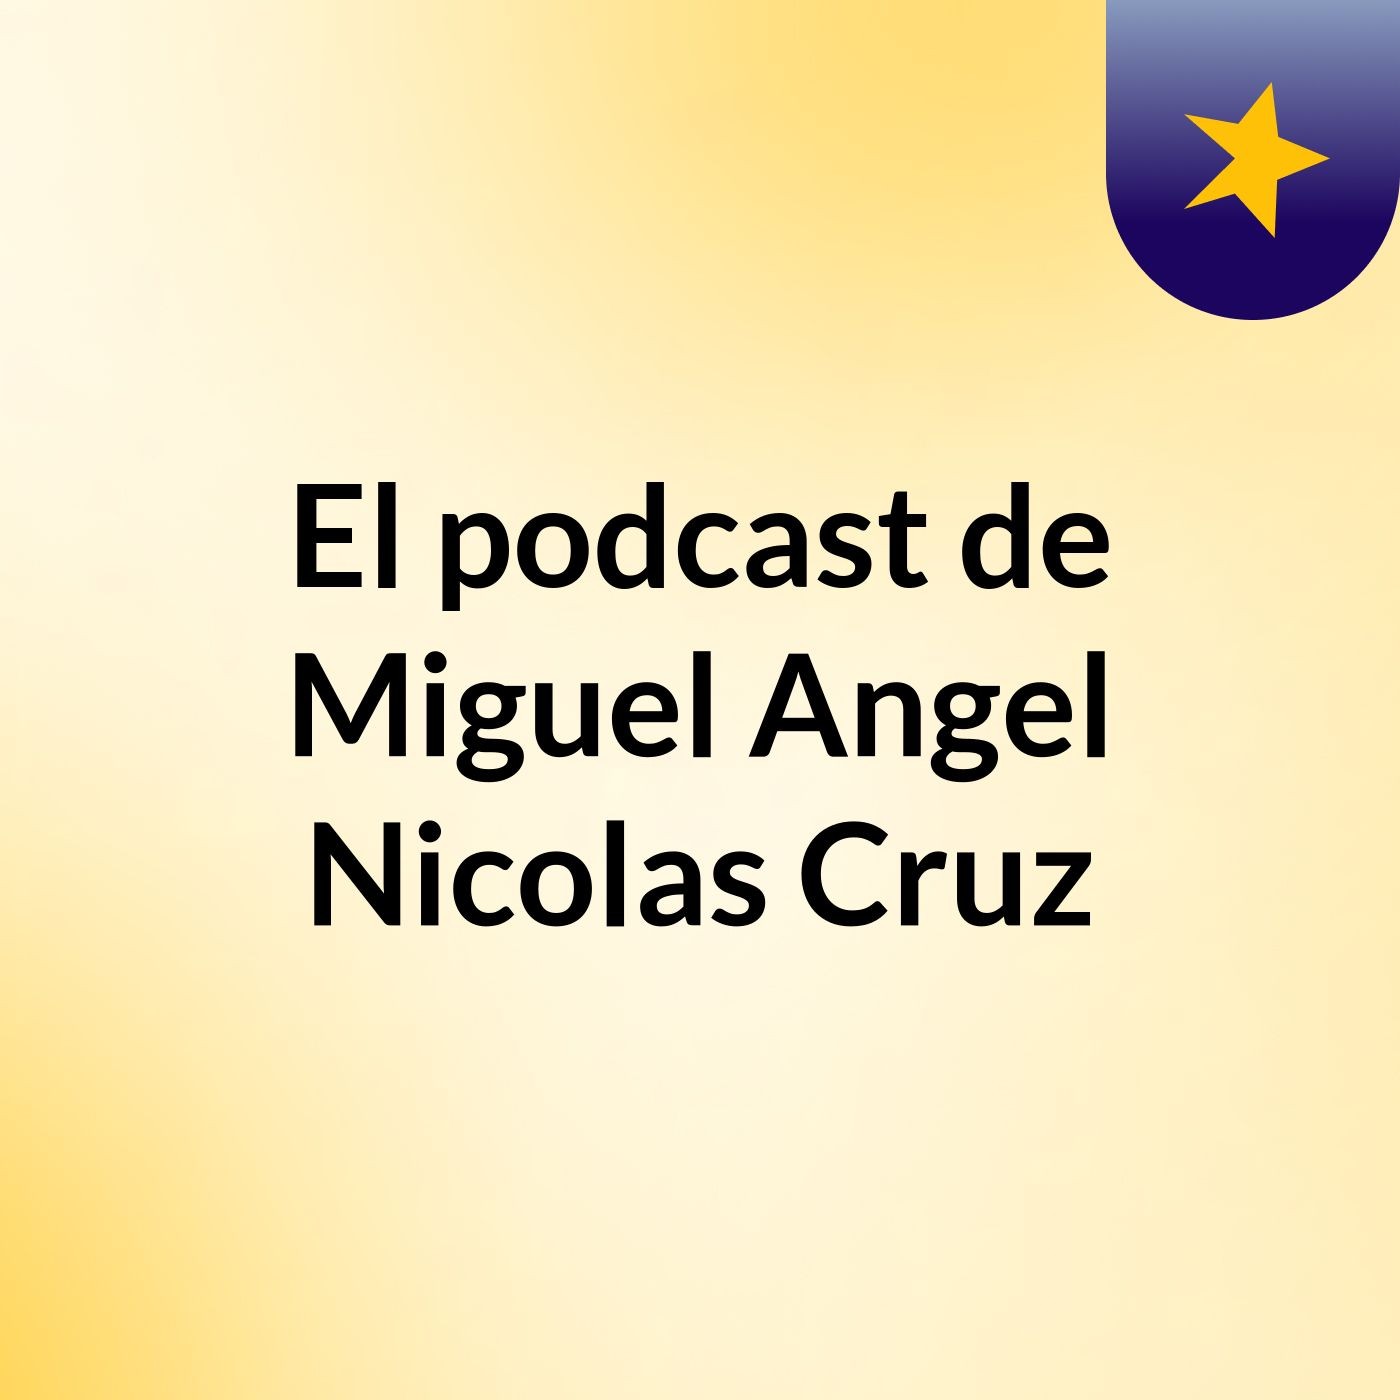 El podcast de Miguel Angel Nicolas Cruz